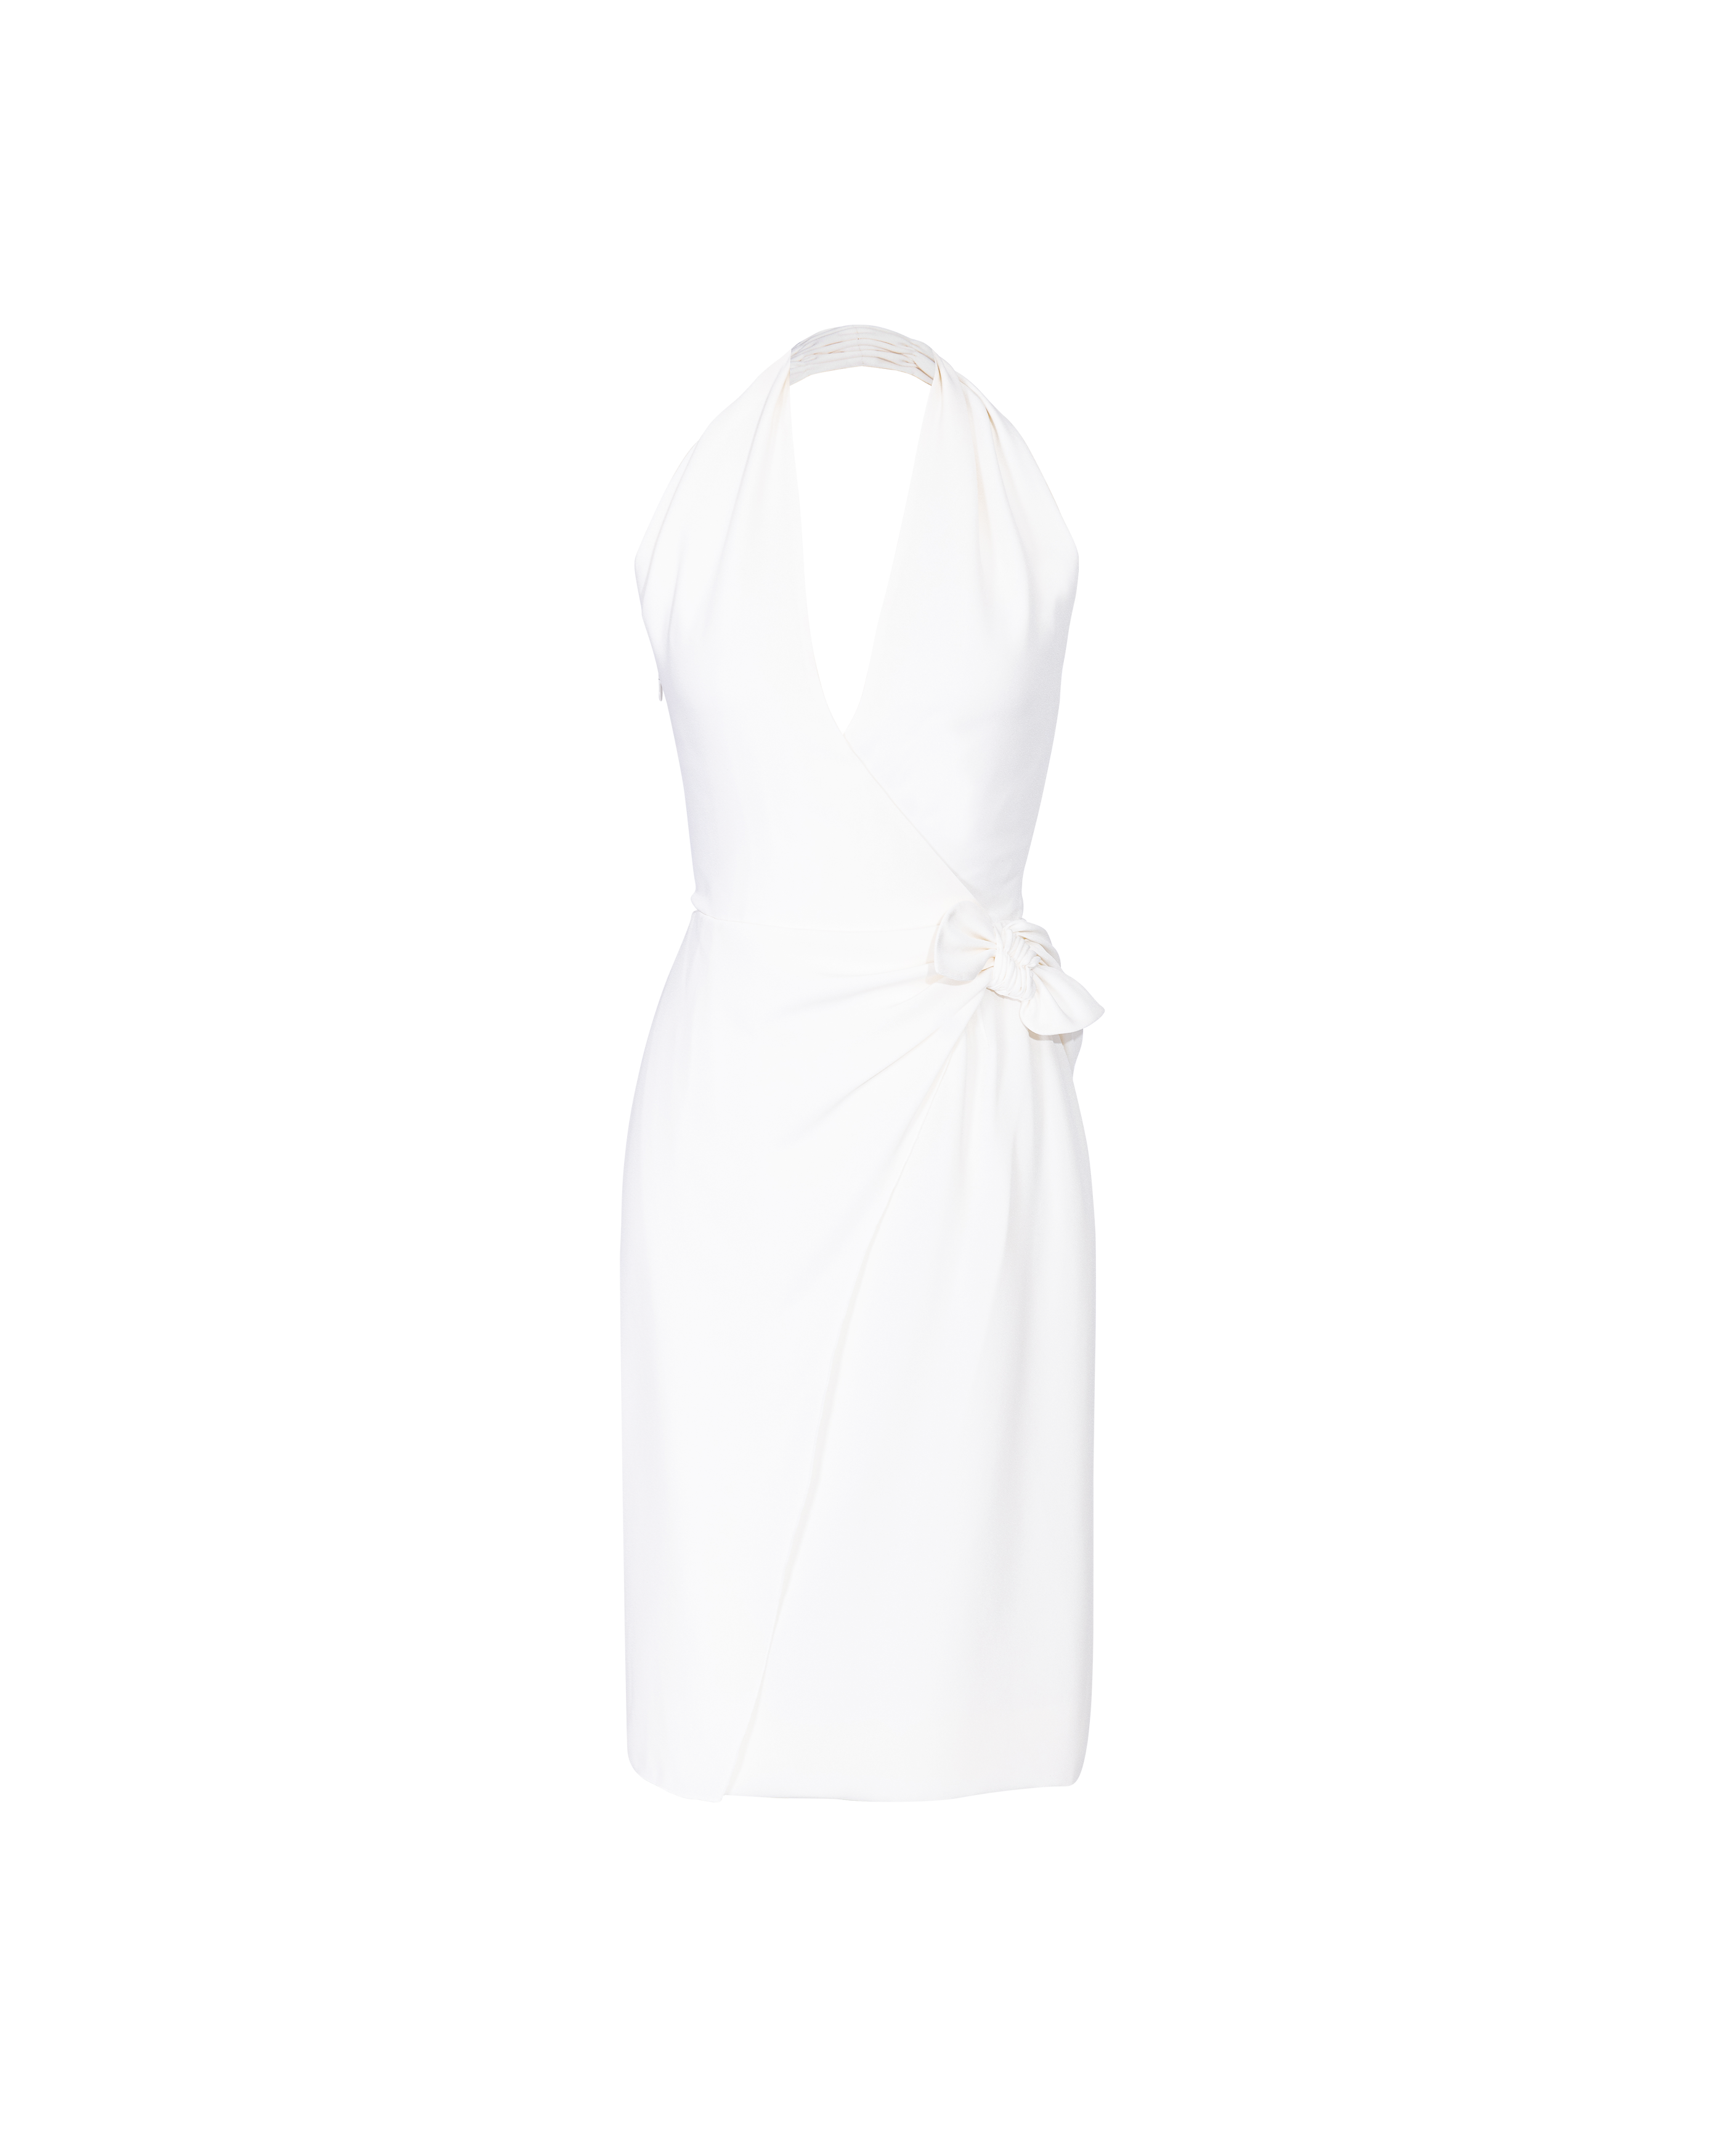 S/S 2001 White Halter Neck Dress